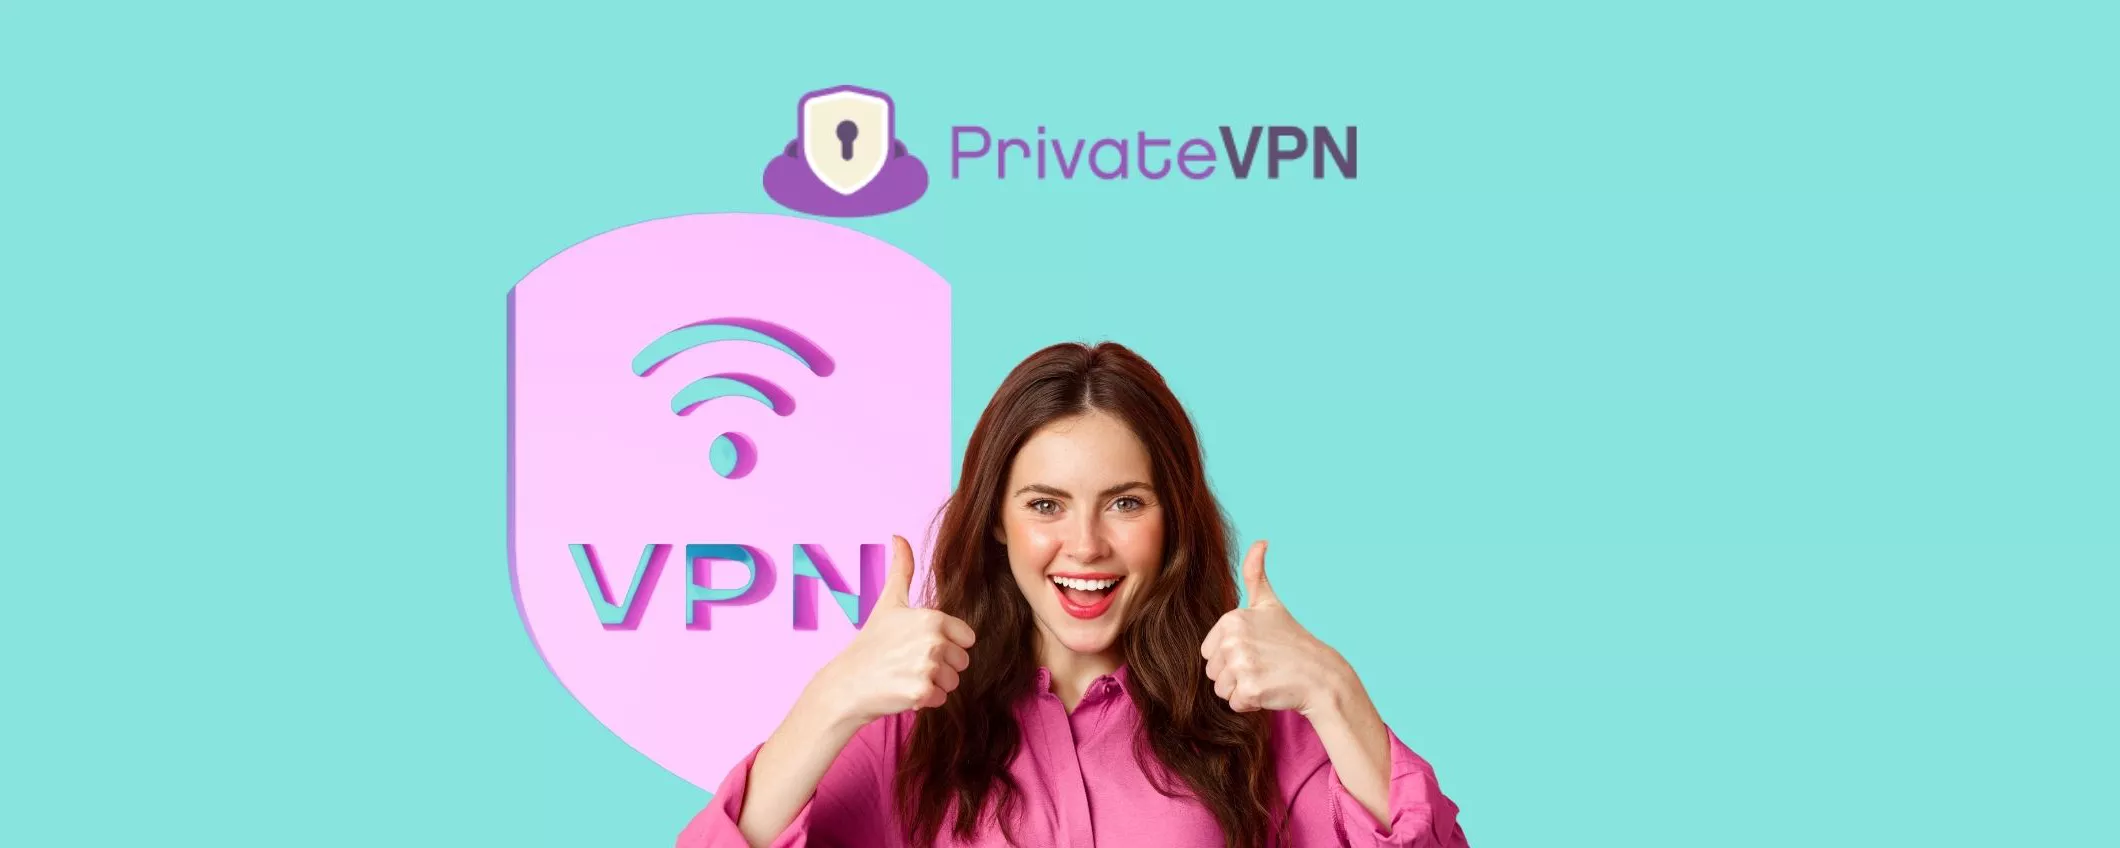 Una VPN economica e di qualità? PrivateVPN a soli 2€/mese